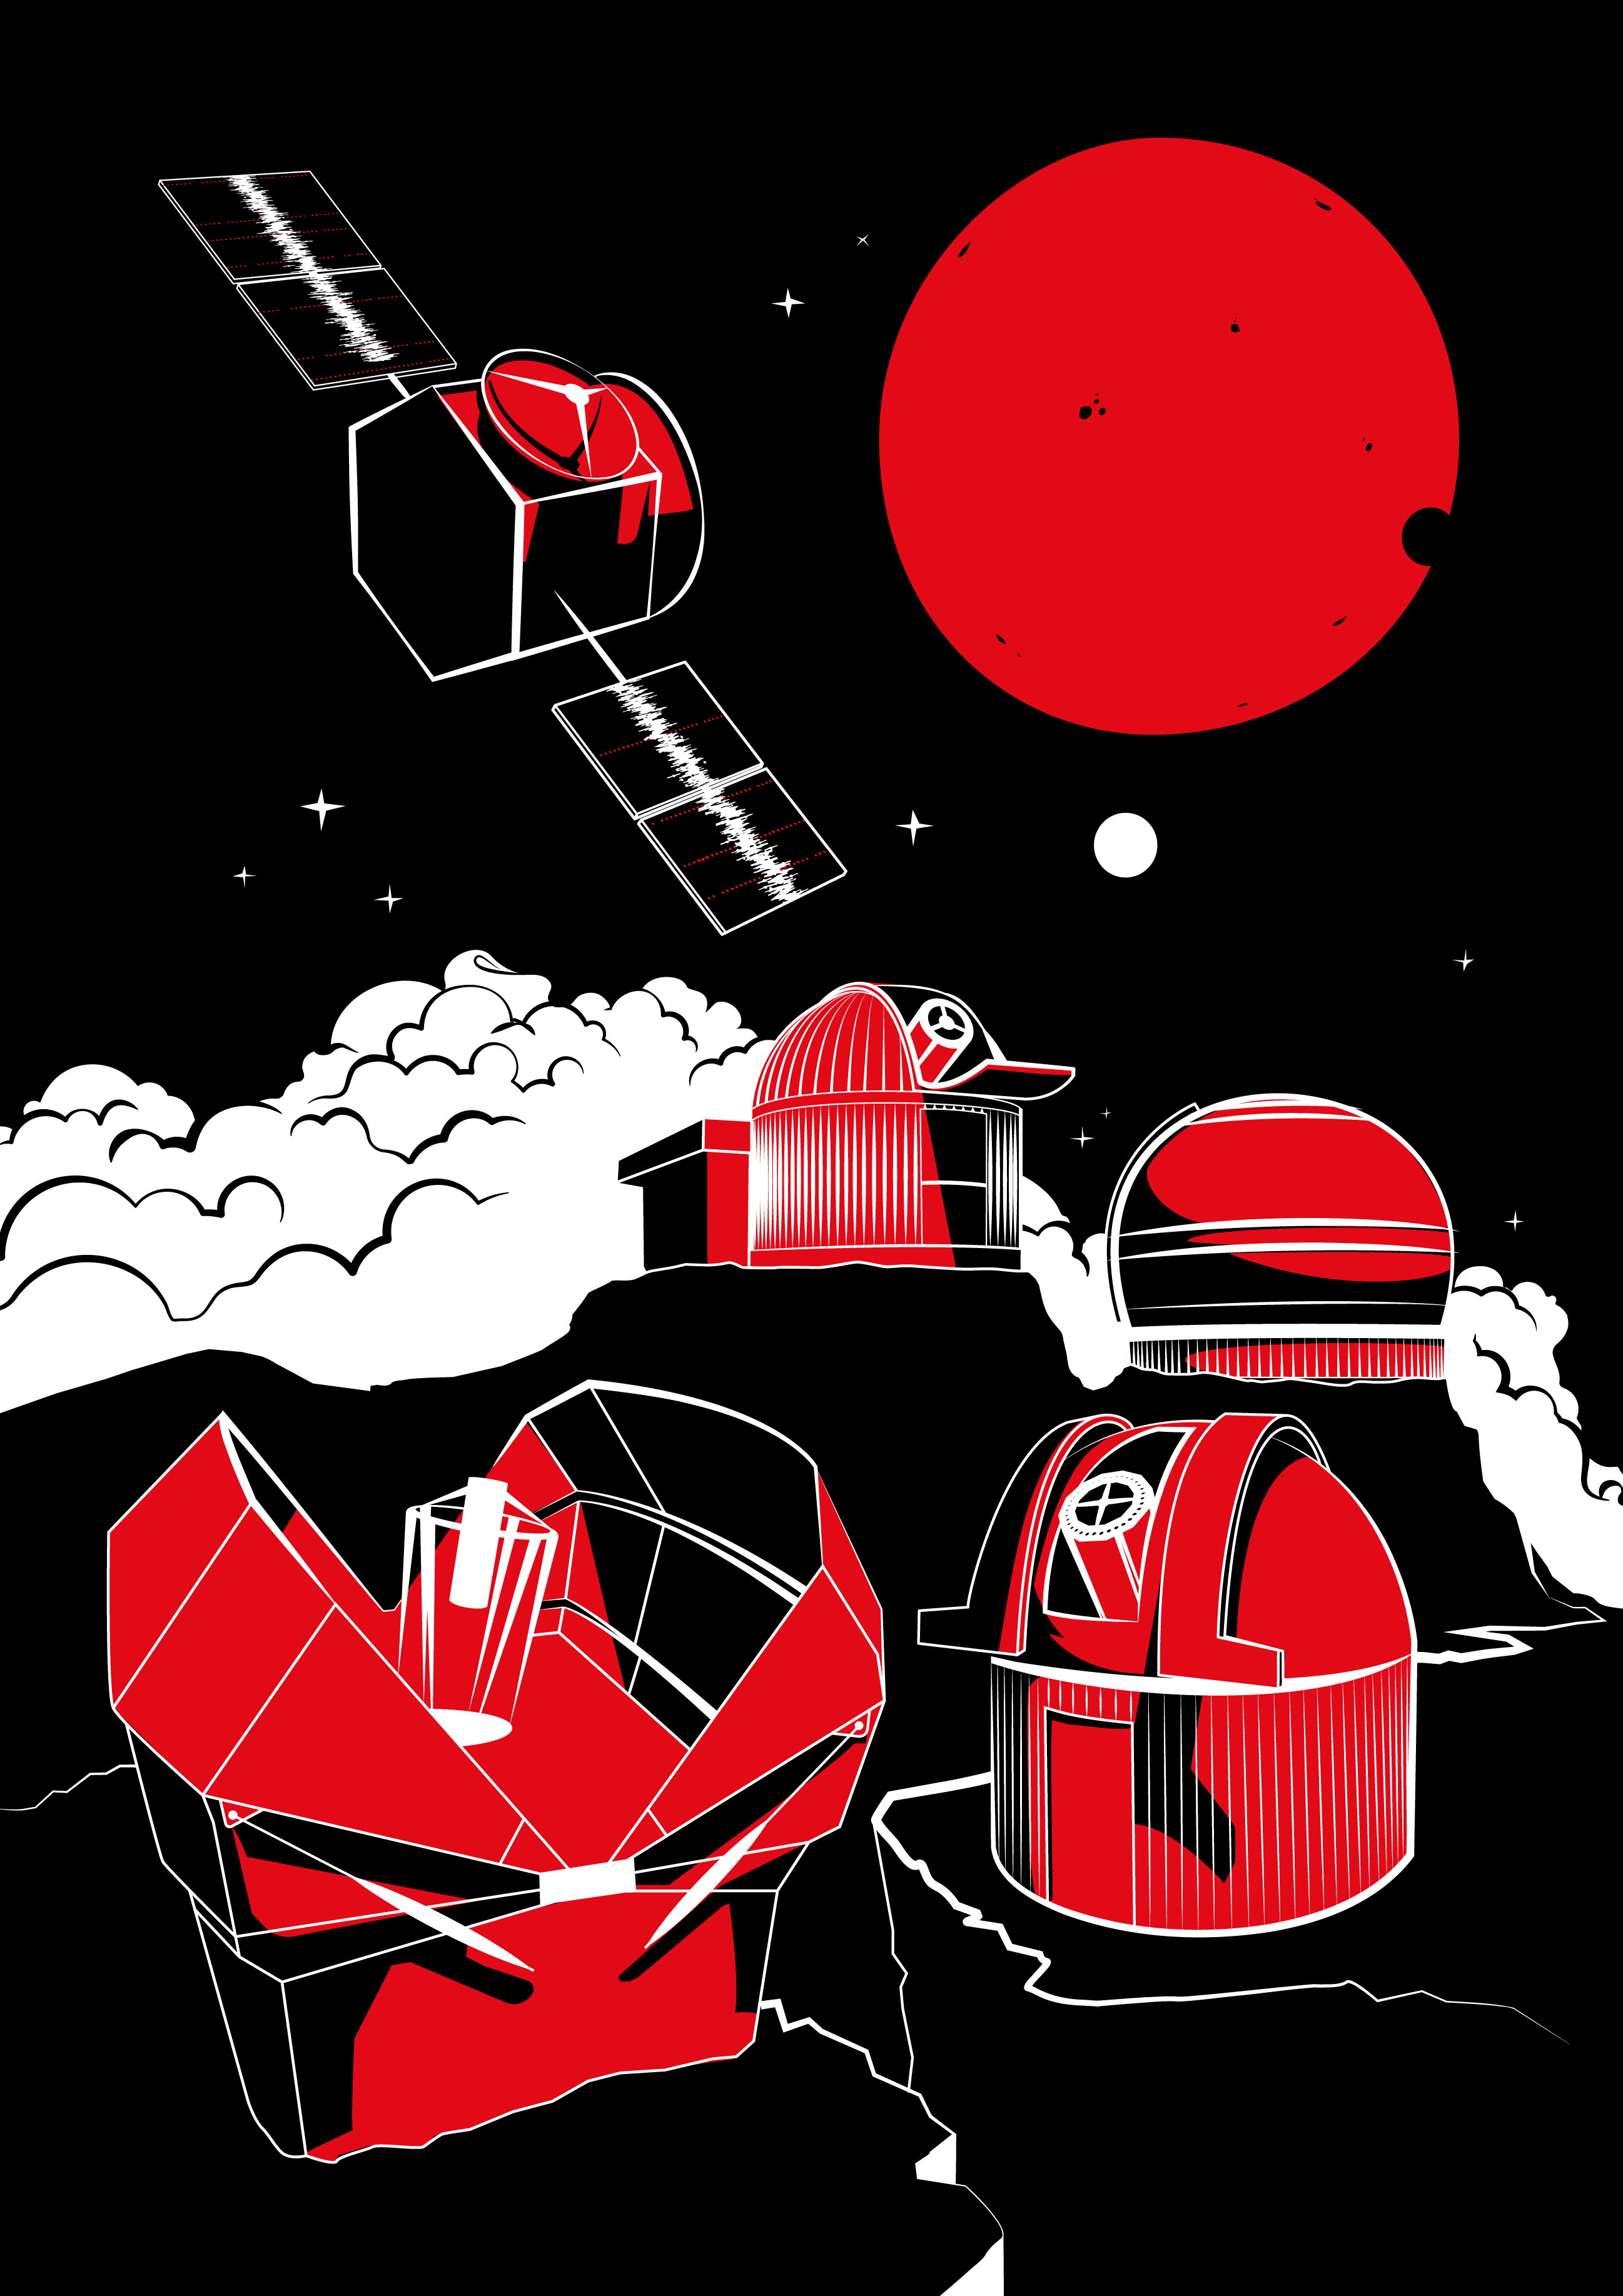   Kızılyıldızı ve iki gezegenini, keşif için kullanılan bazı teleskoplarla birlikte gösteren sanatçının görüntüsü. 